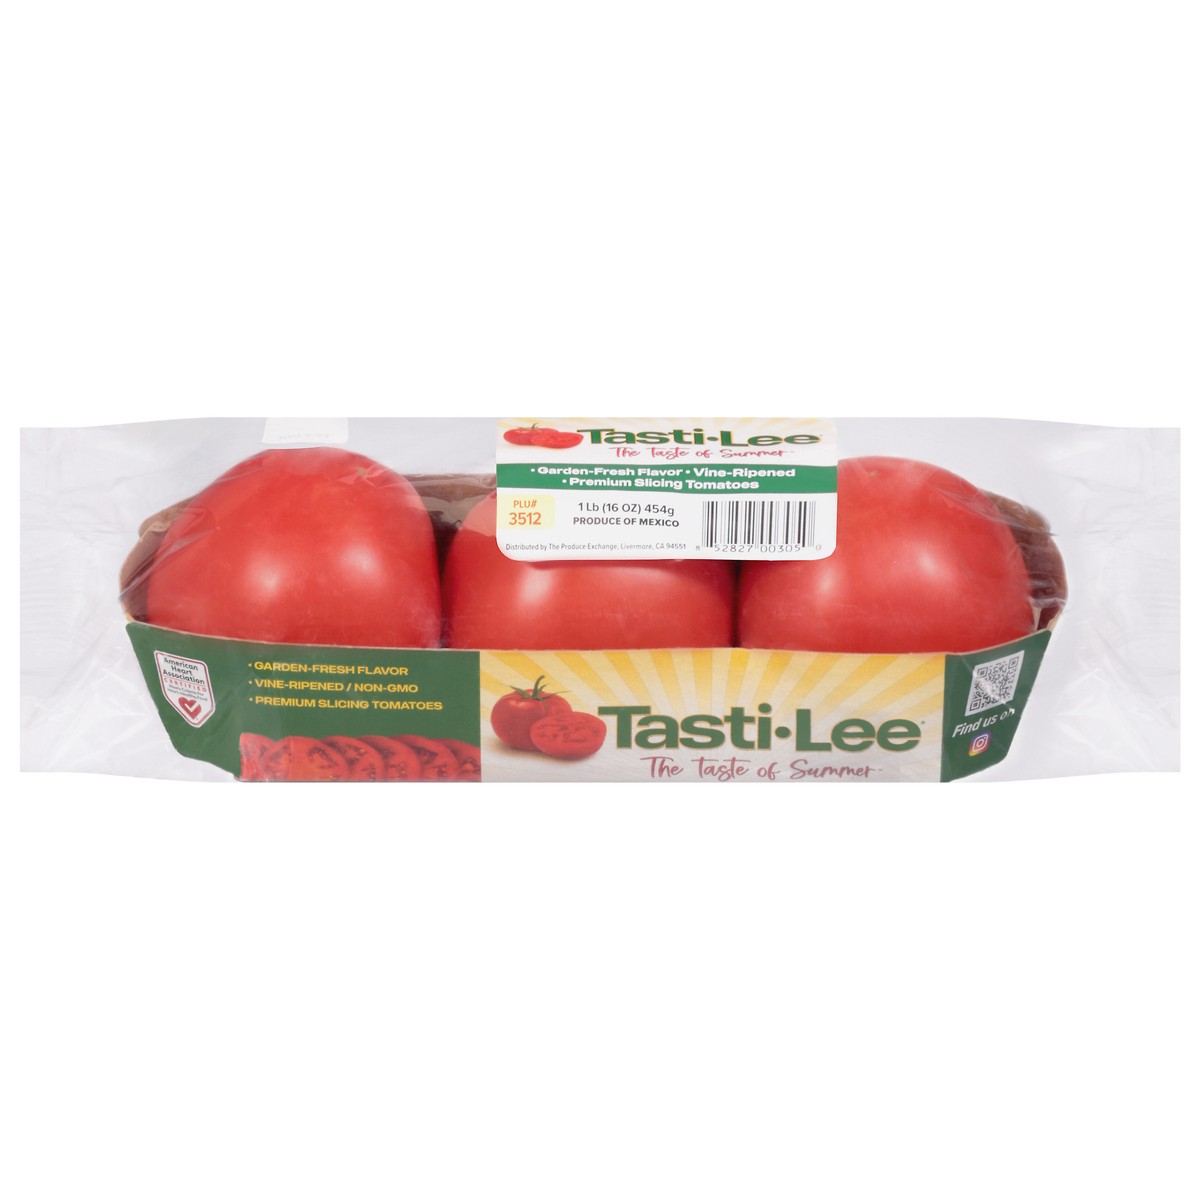 slide 1 of 9, Tasti-Lee Premium Vine-Ripened Tomatoes, 1 lb